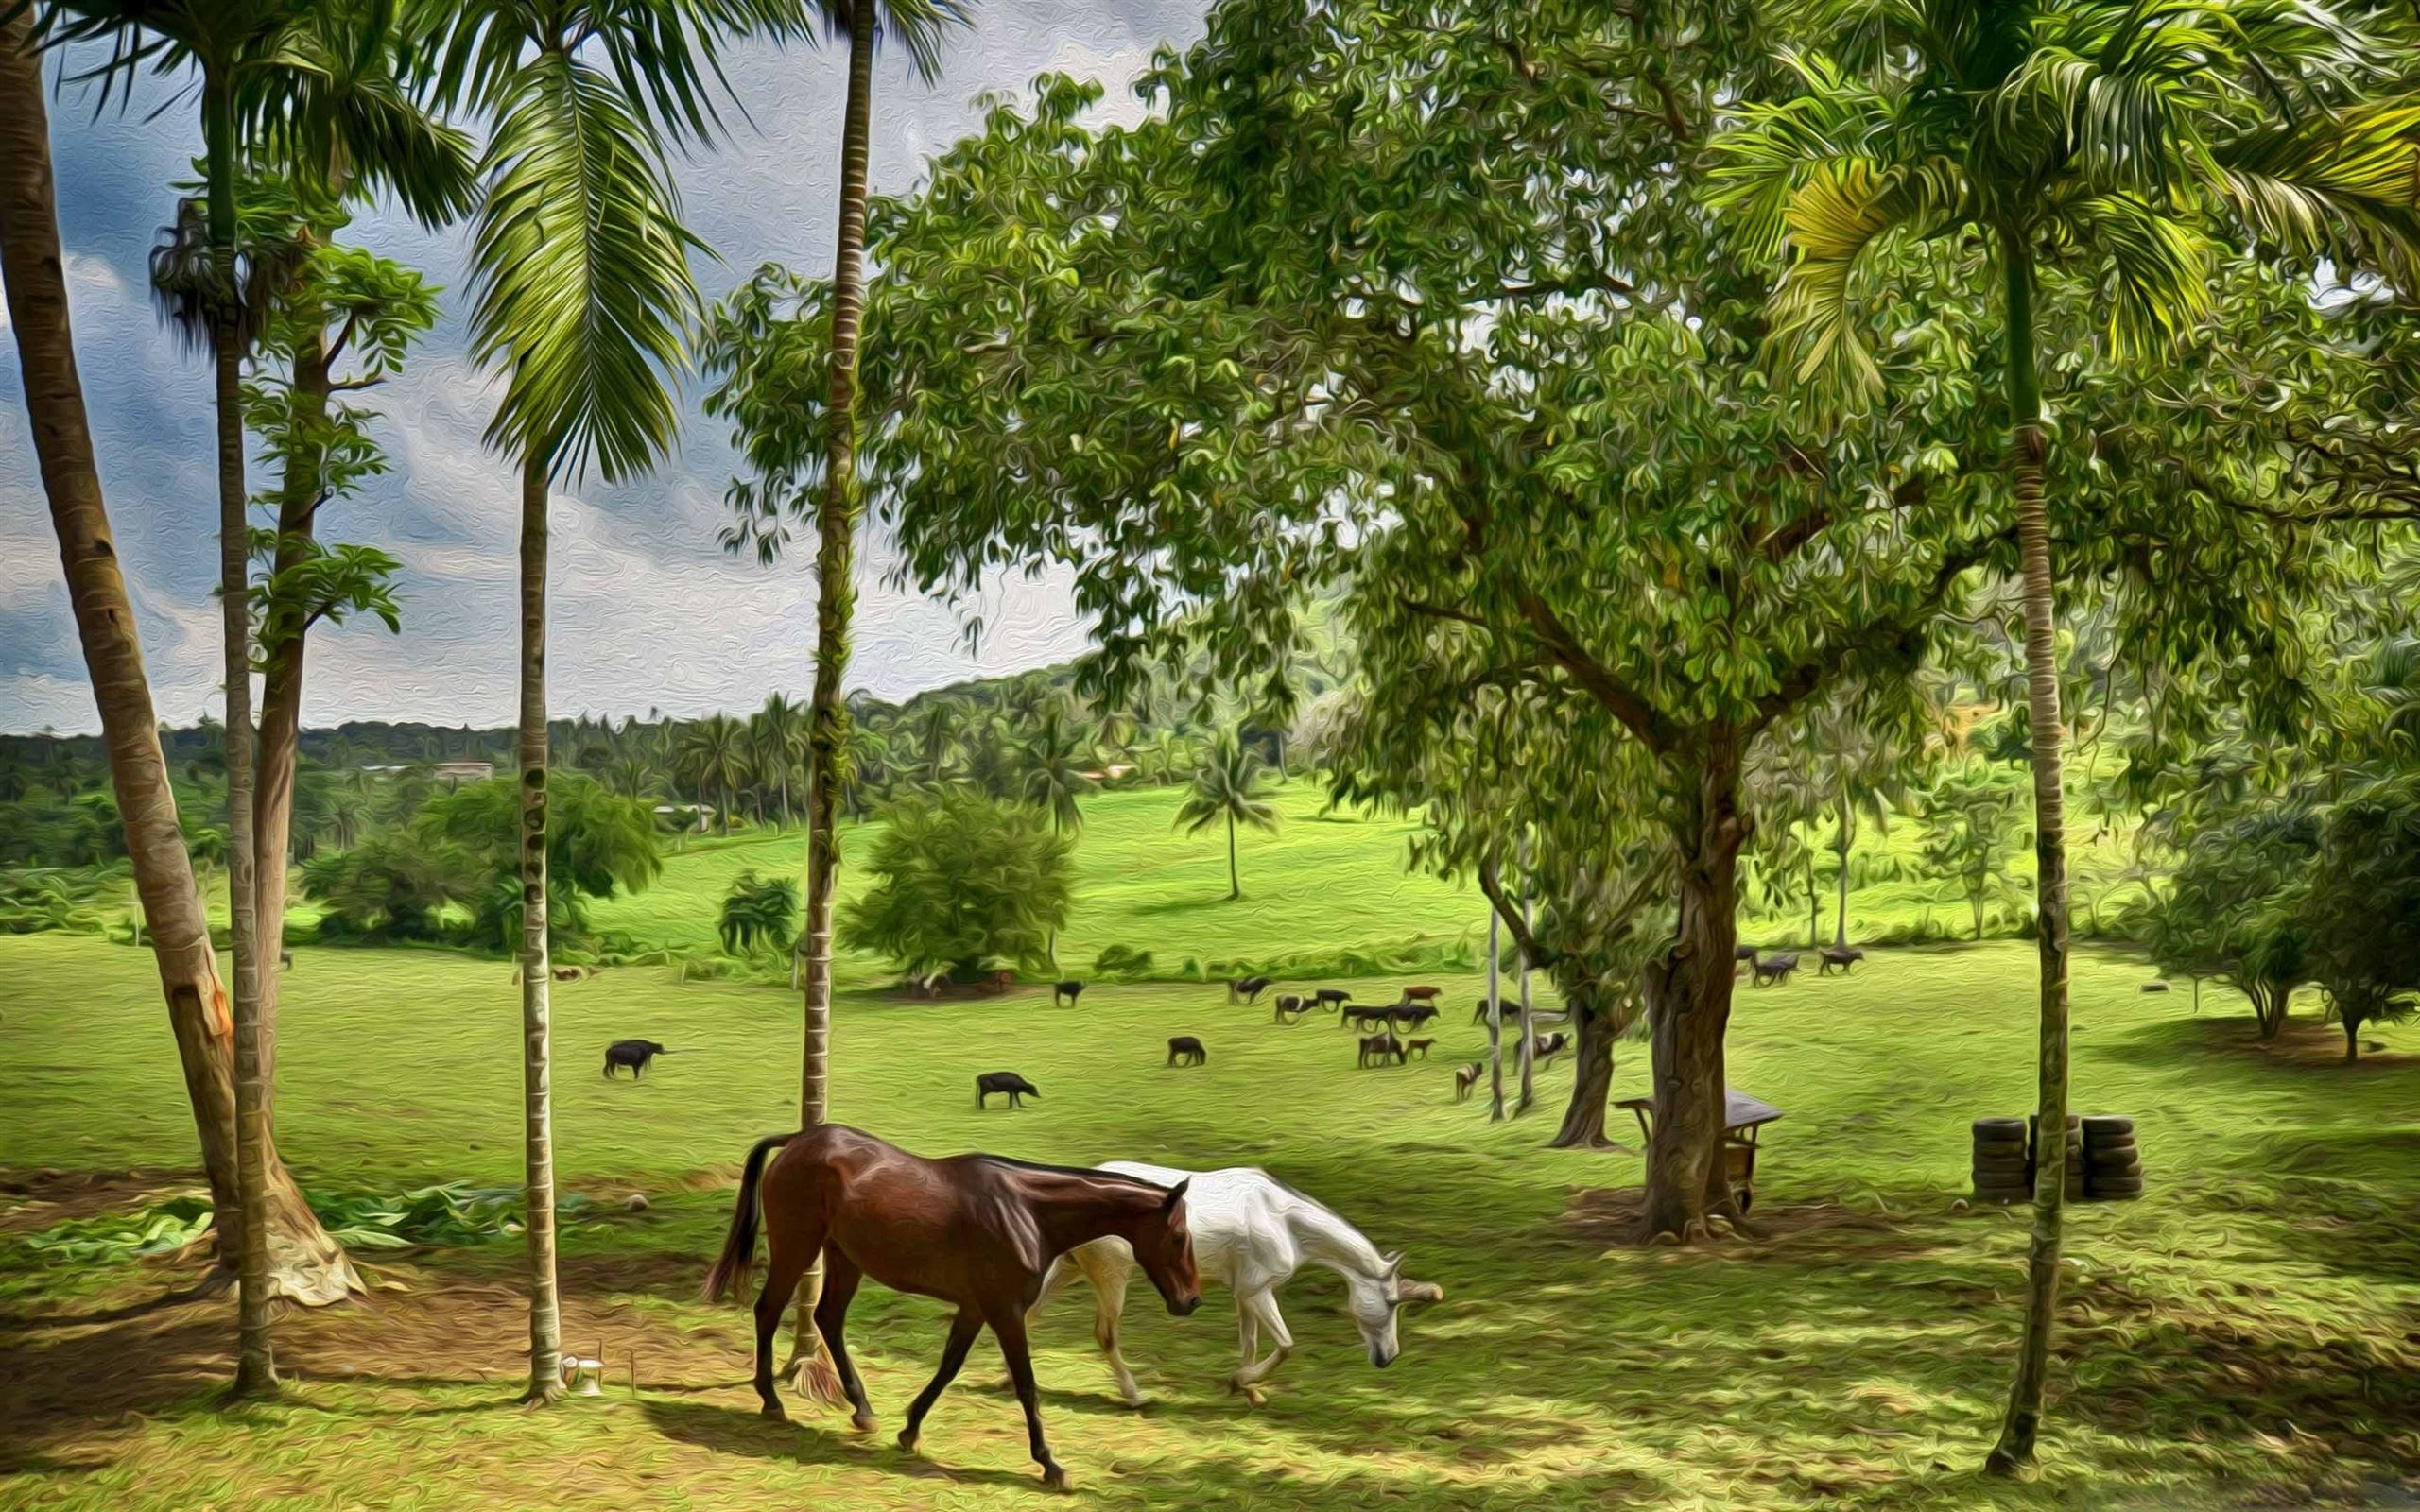 Happy farm, MacBook Air wallpaper, Natural beauty, Farm landscape, 2560x1600 HD Desktop